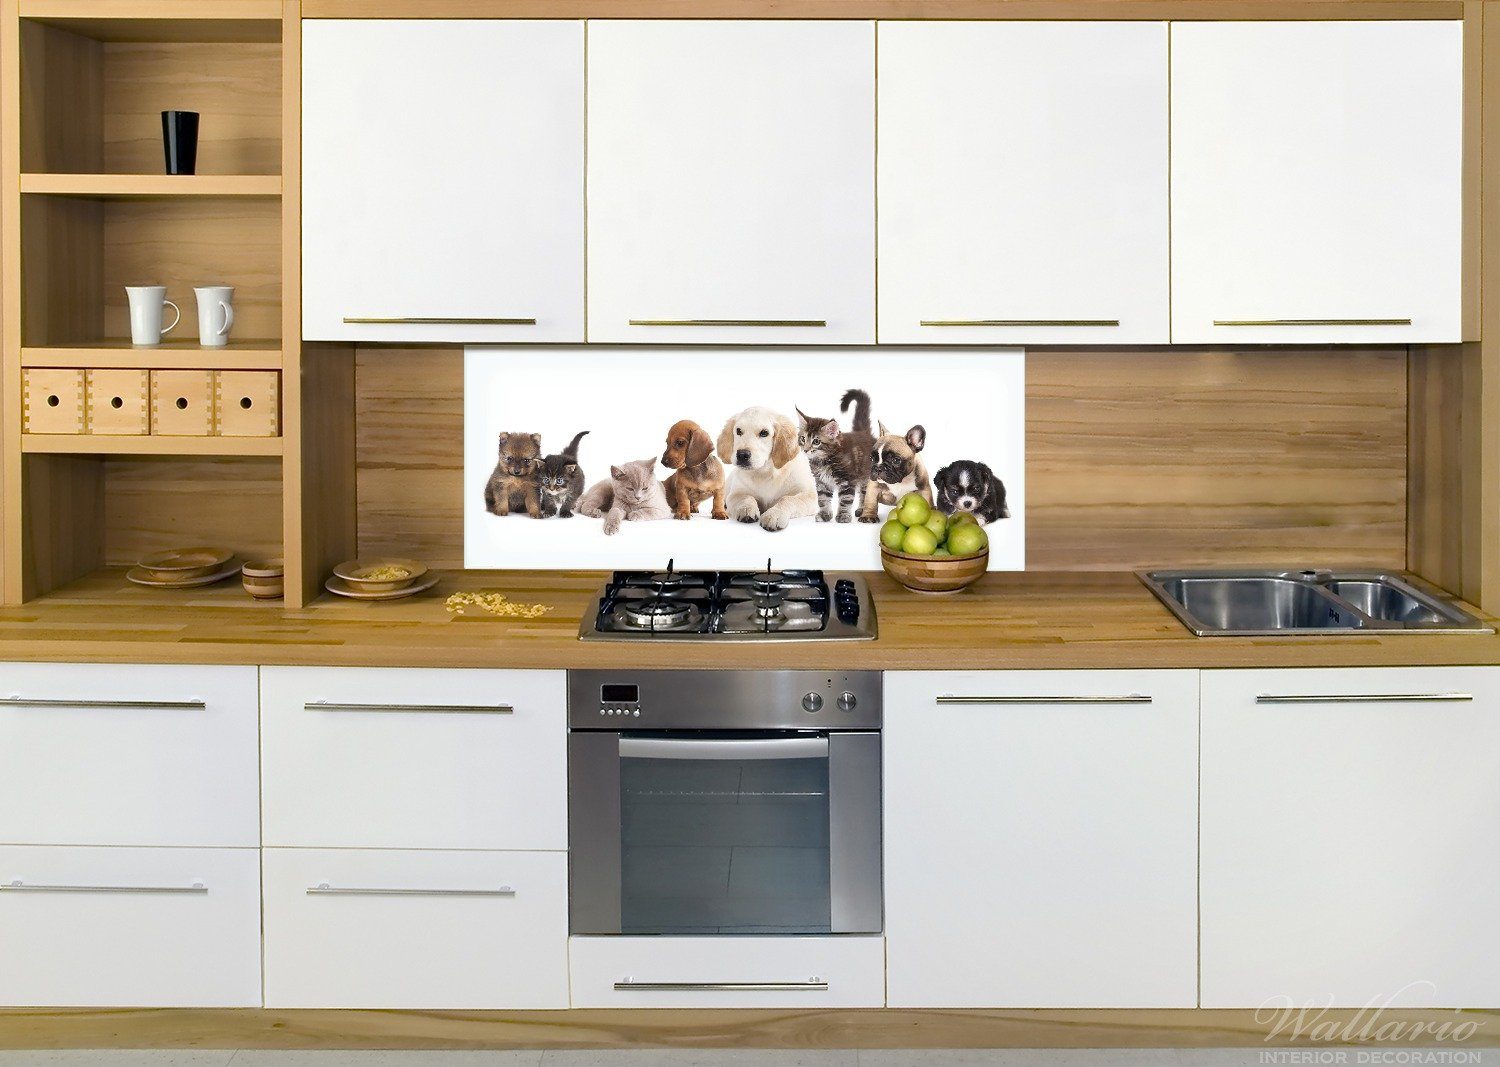 Wallario Küchenrückwand Hundewelpen (1-tlg) und Katzenjunge